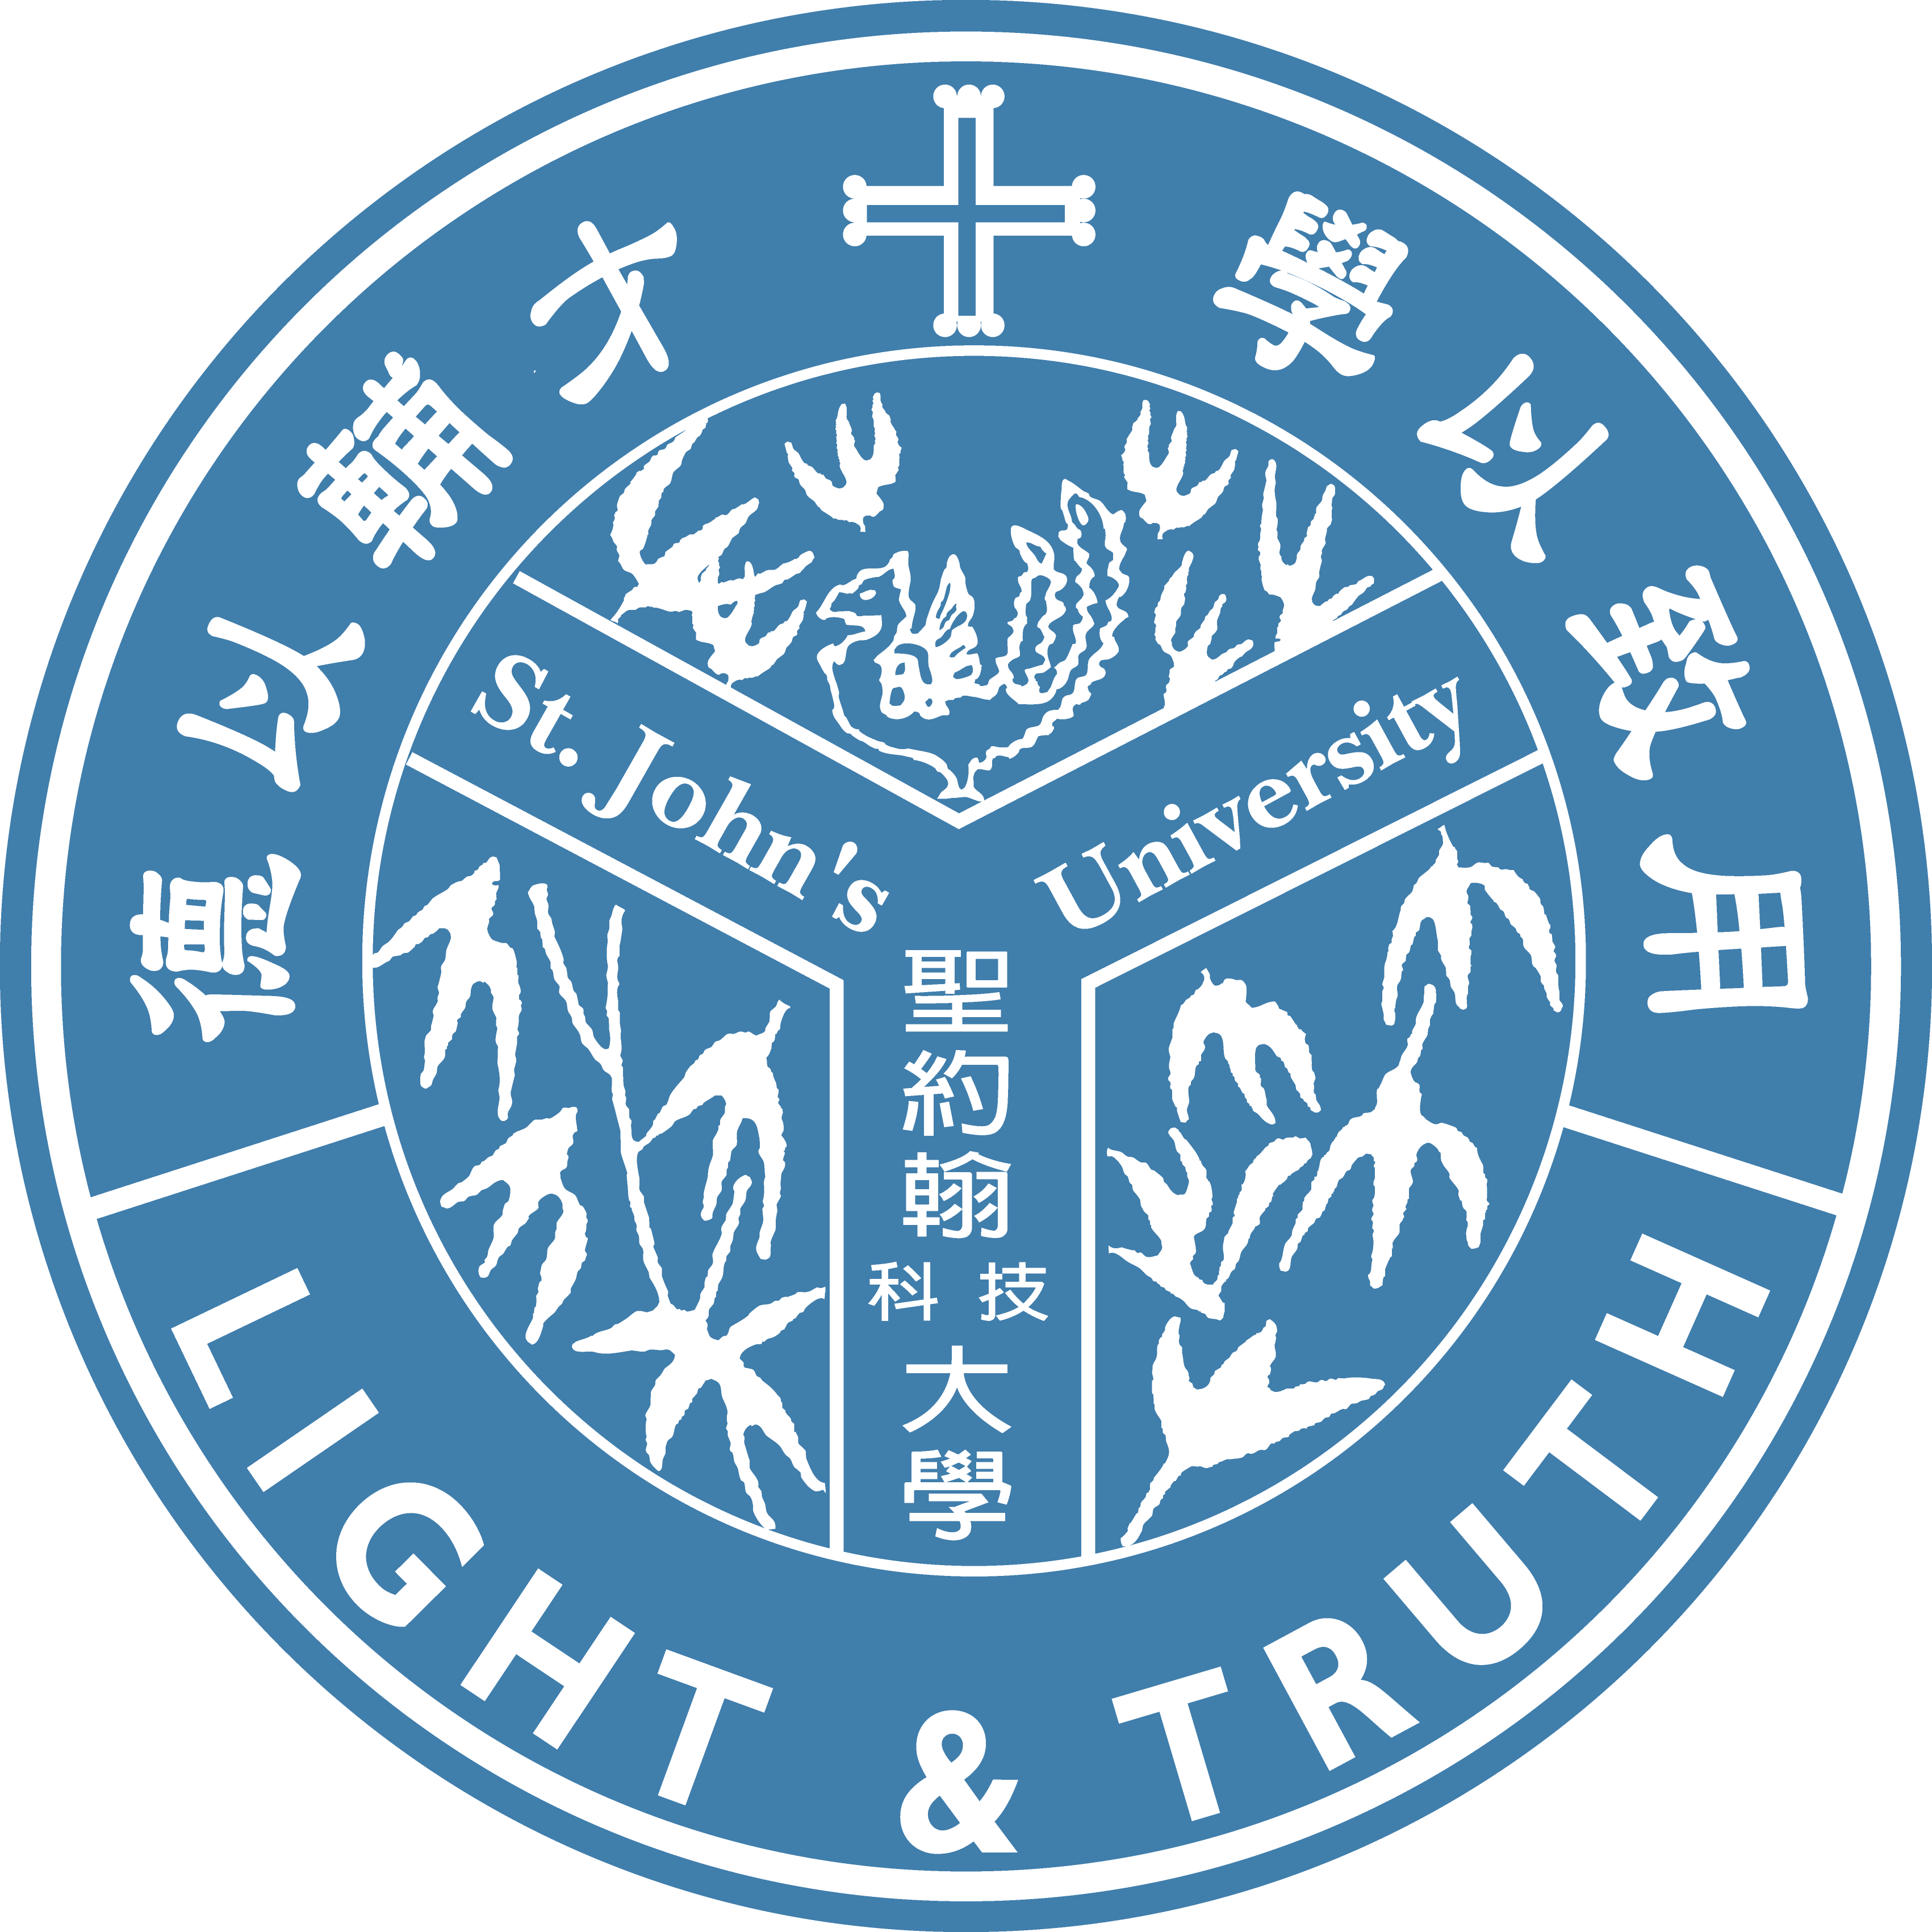 Đại học khoa học kỹ thuật Thánh John Logo